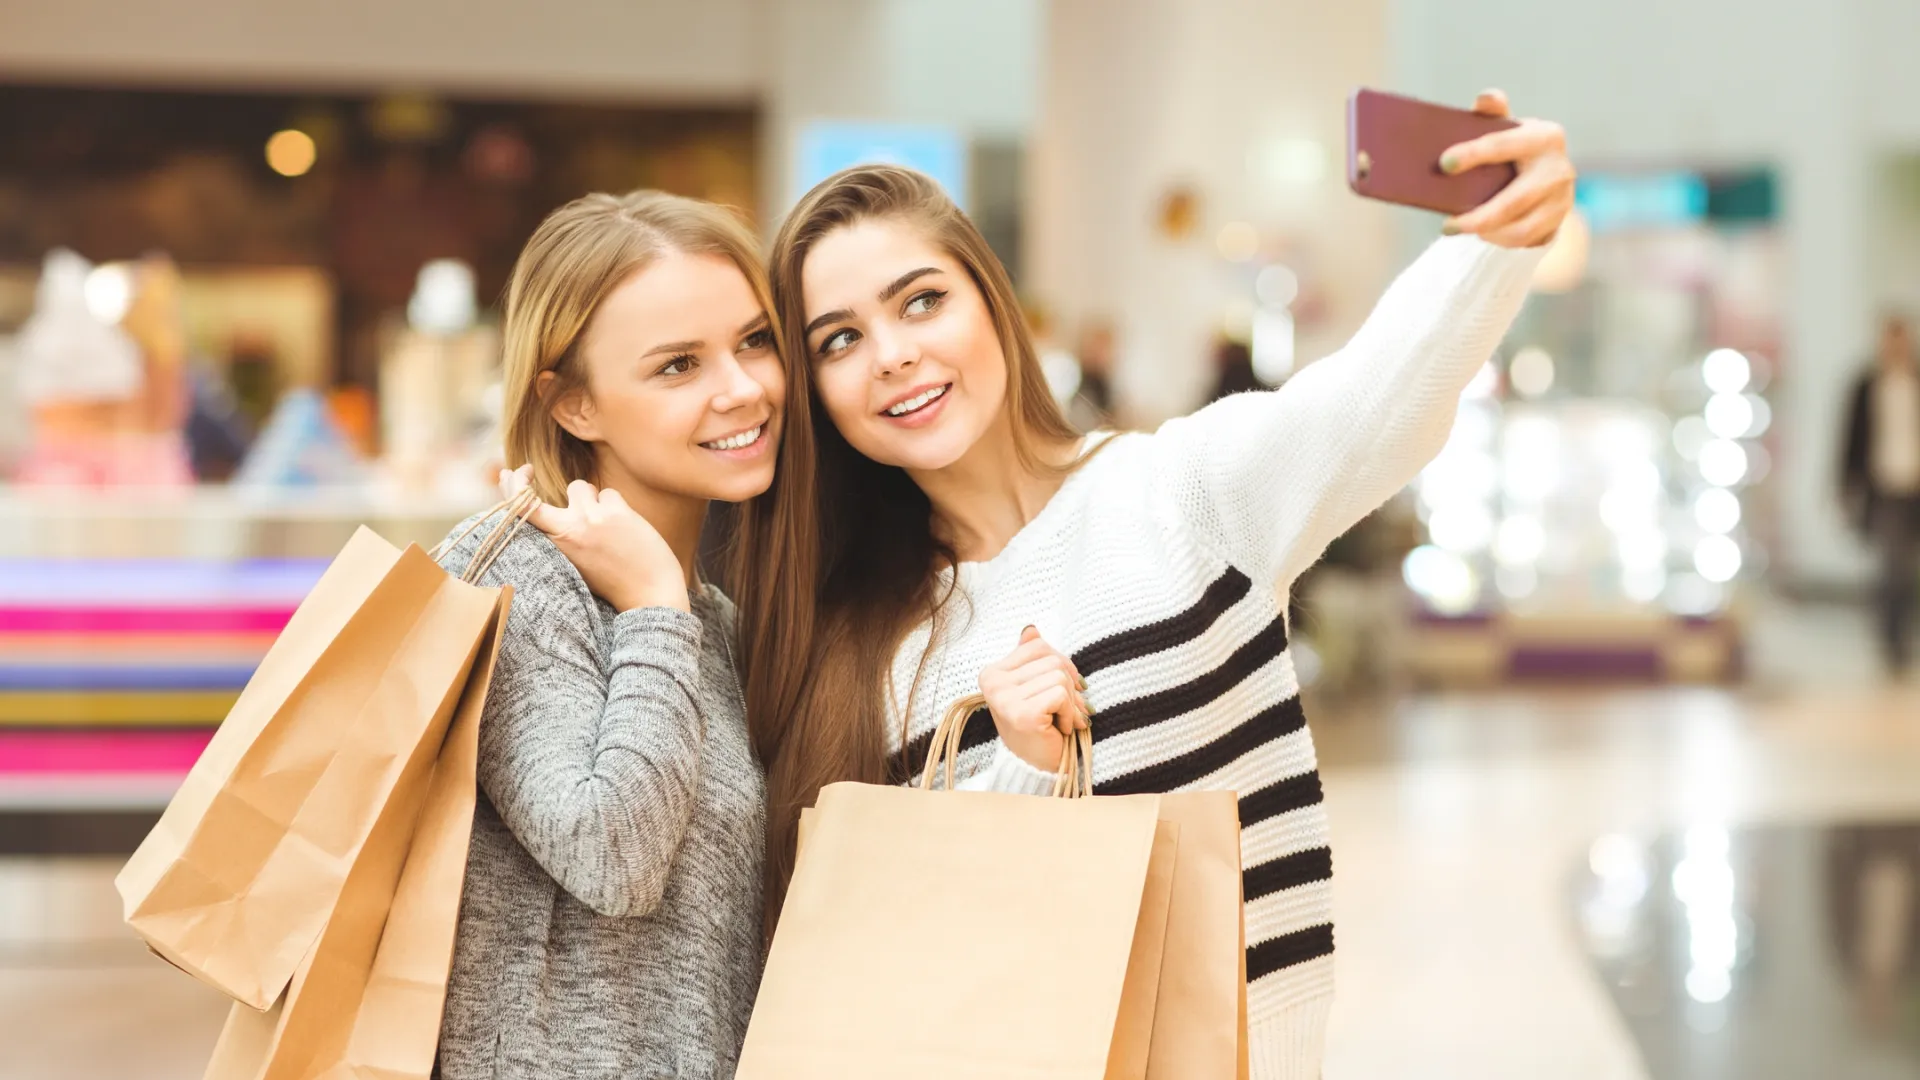 Перед тем, как отправиться на шопинг, лучше узнать о трендах. Фото: Nestor Rizhniak / Shutterstock / Fotodom